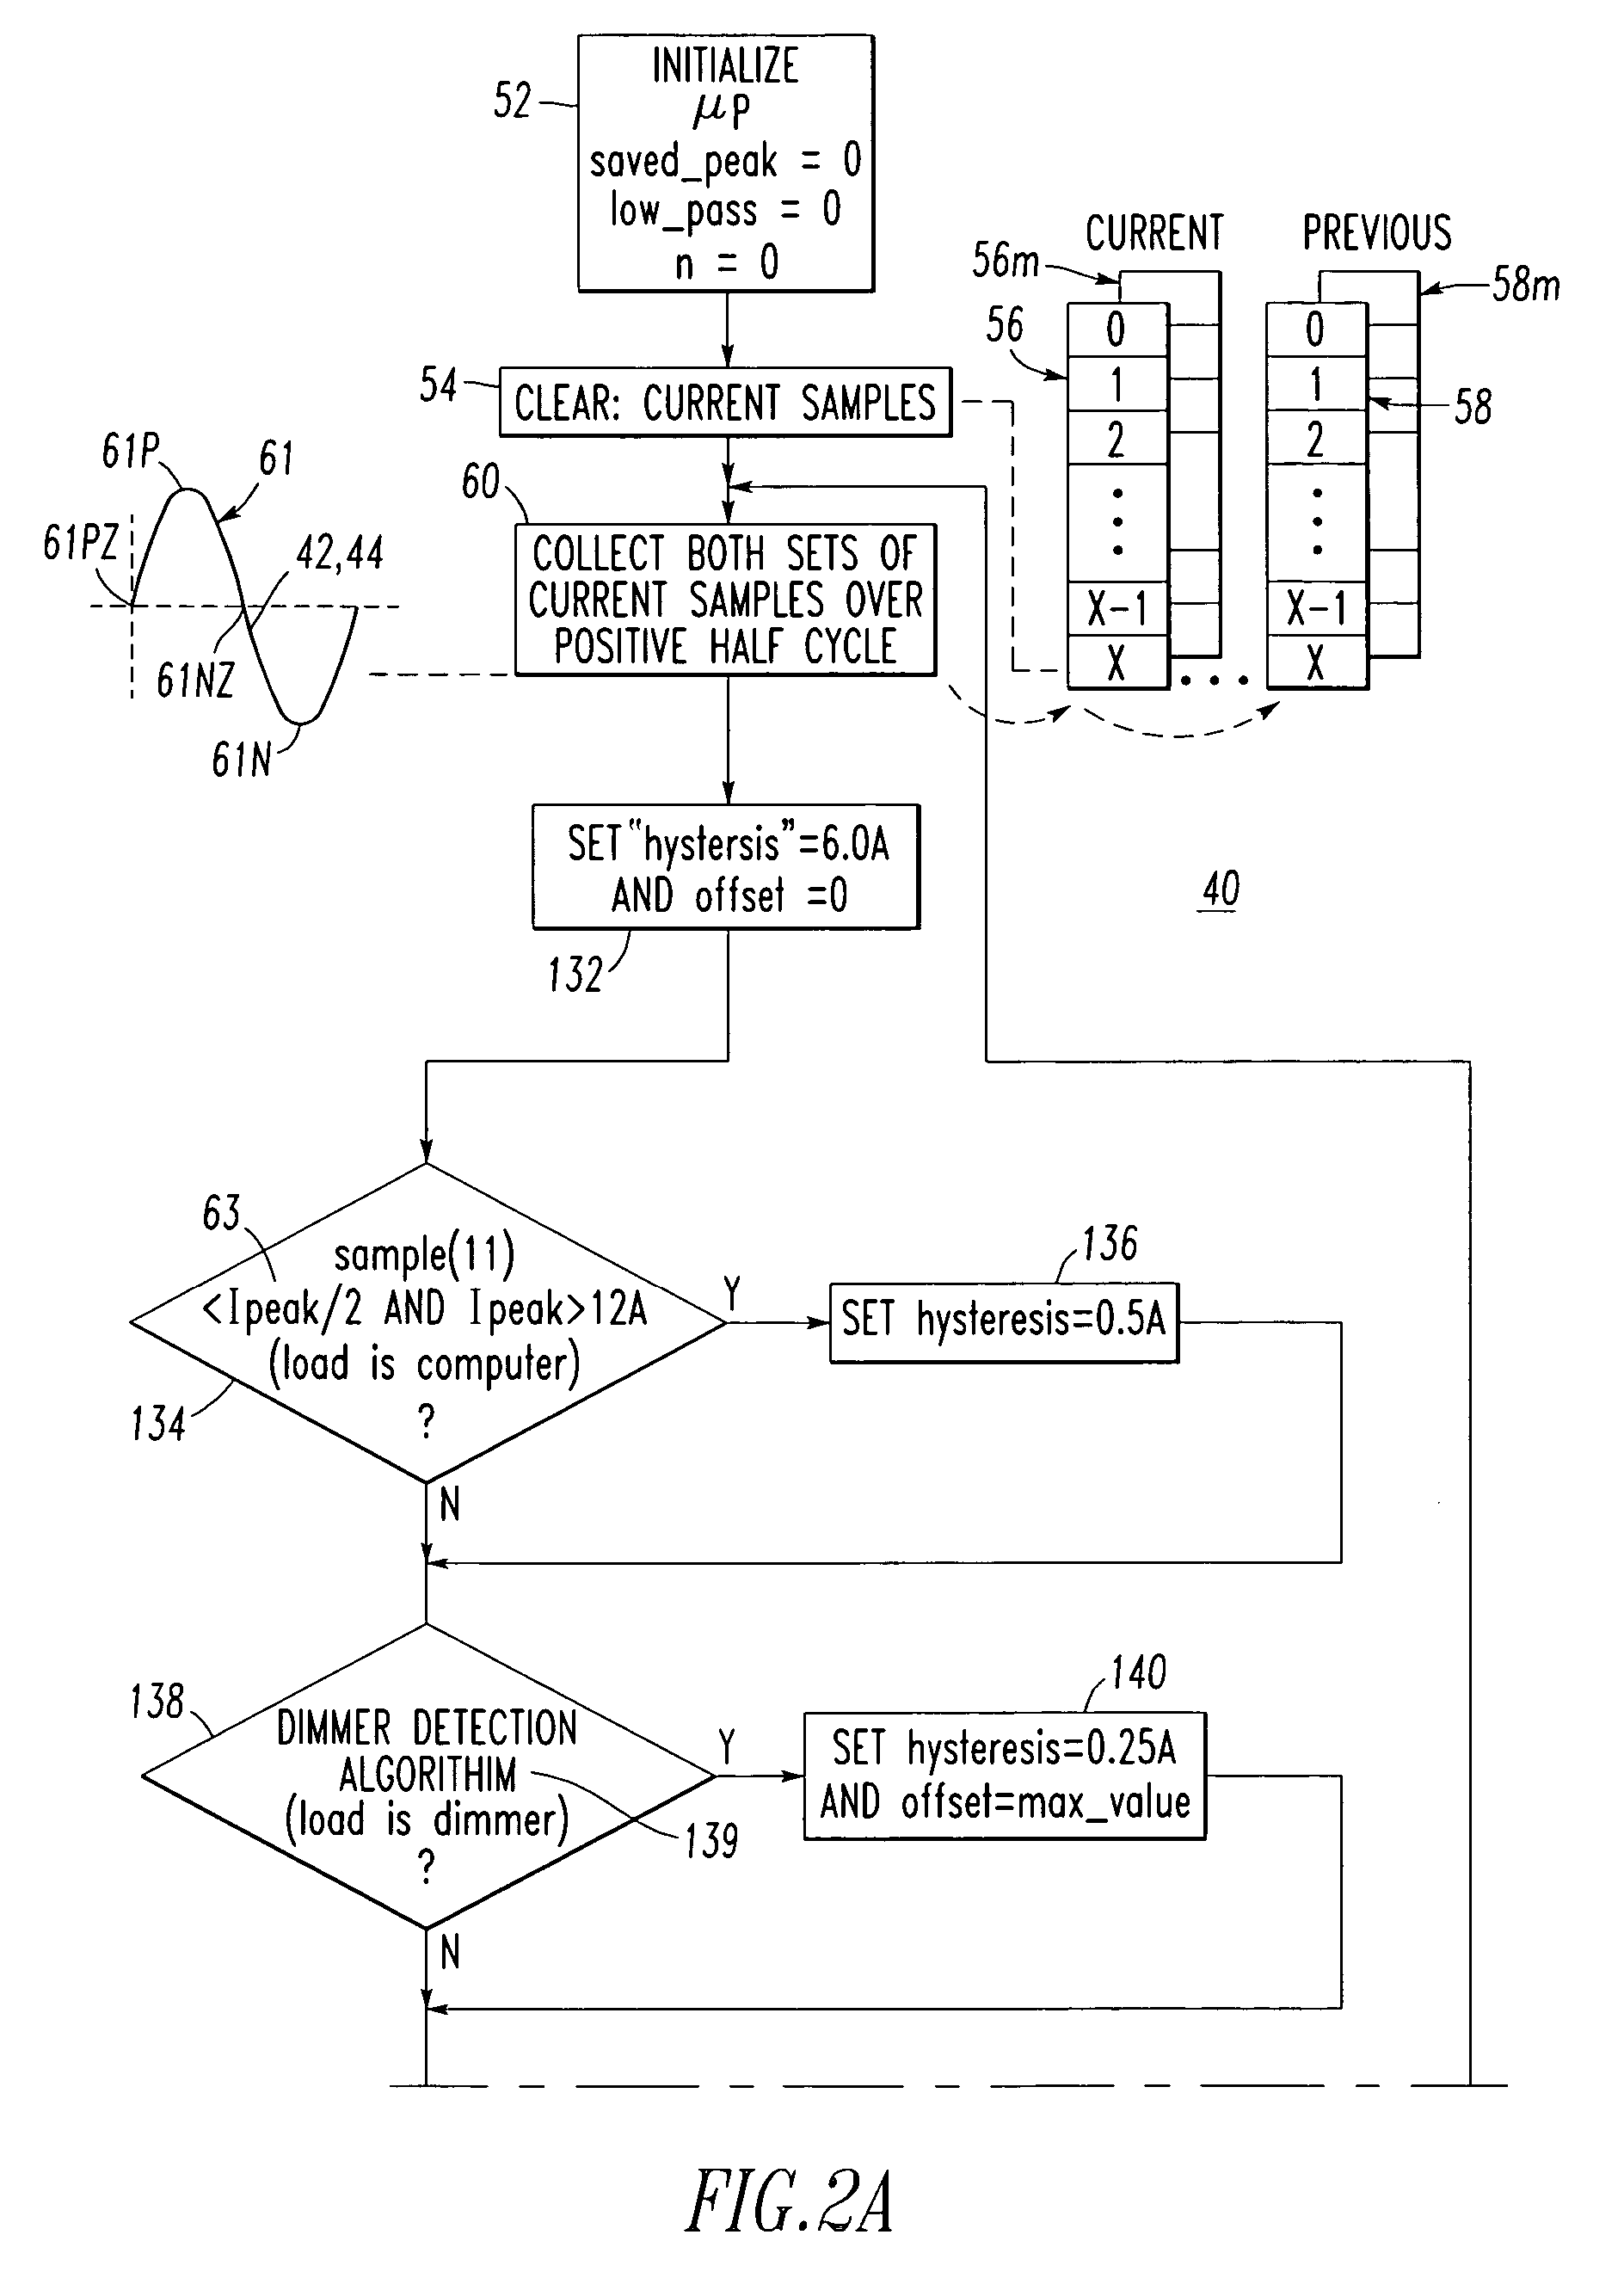 Arc fault circuit interrupter for a compressor load